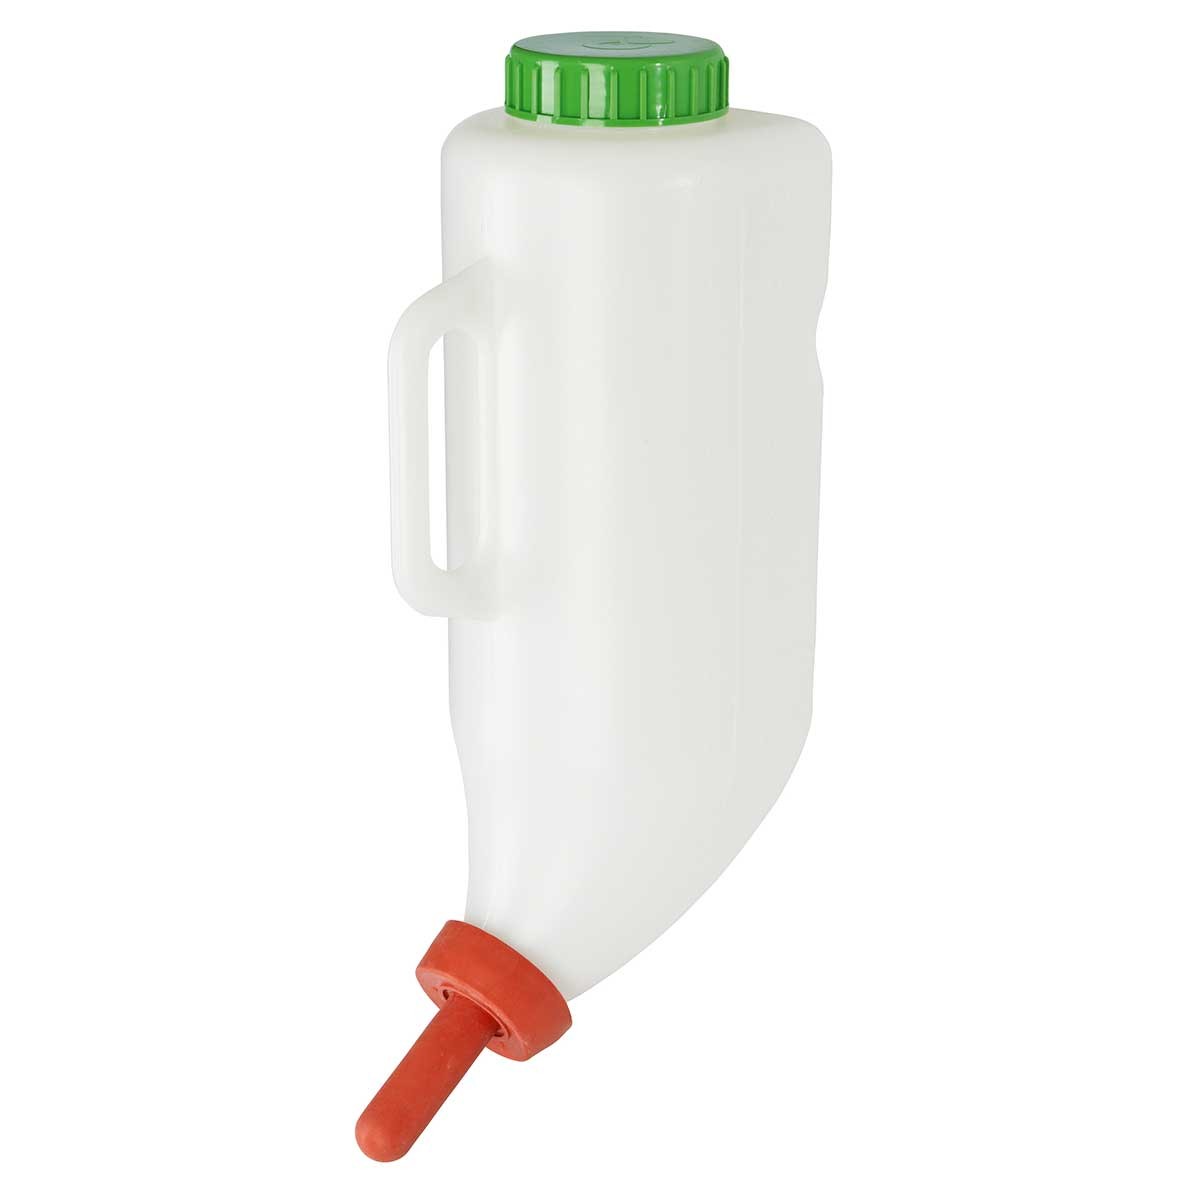 Kerbl Milchflasche / Drenchflasche 2.5 Liter